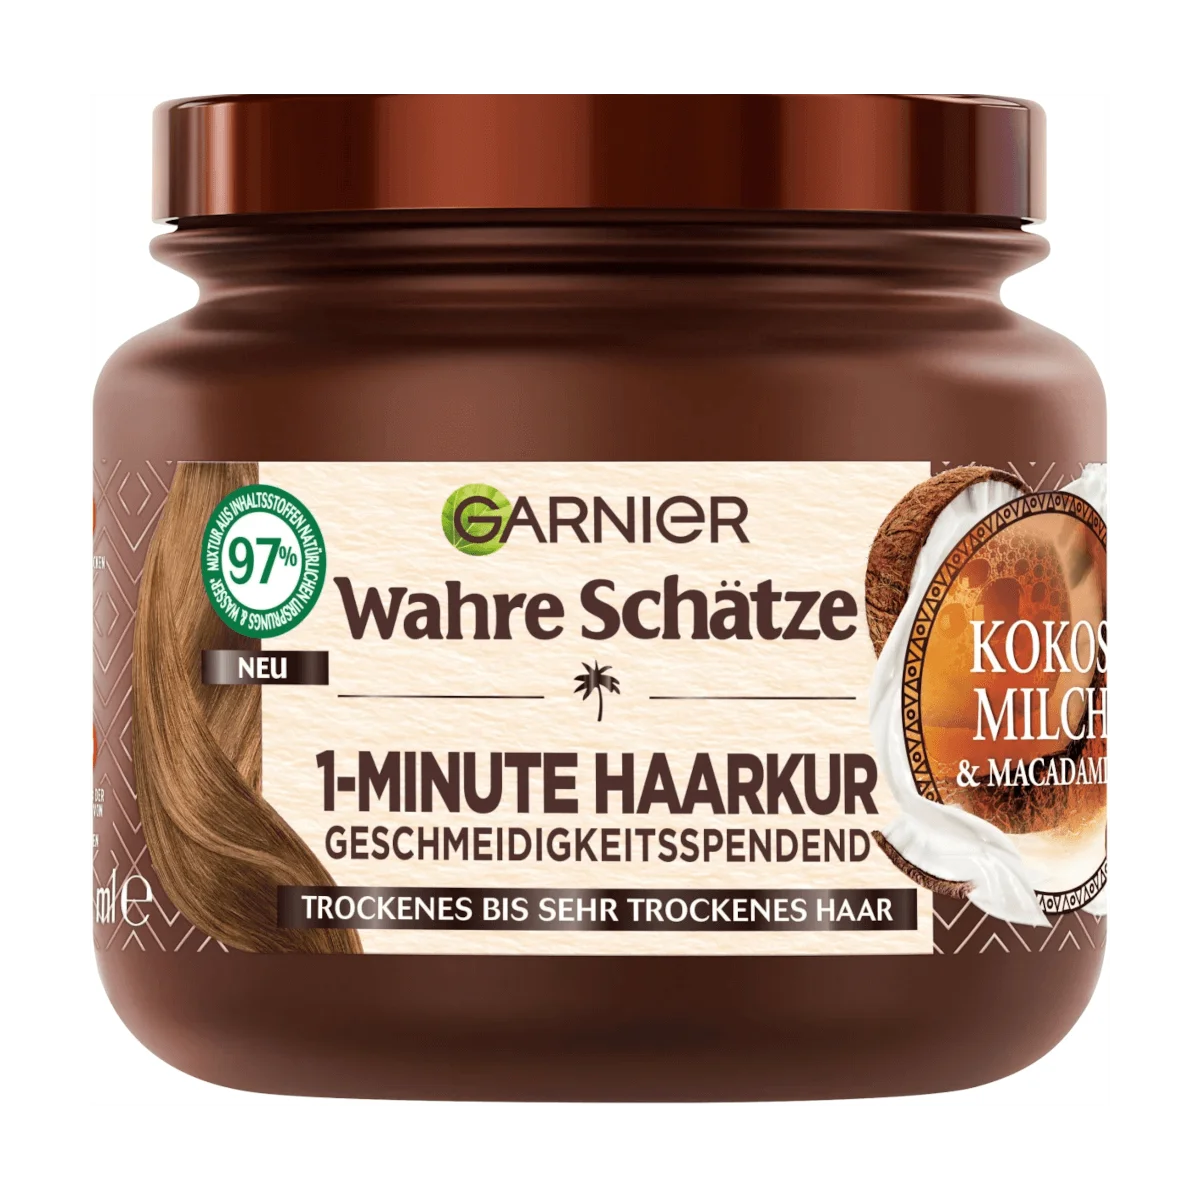 Garnier Wahre Schätze Haarkur 1-Minute Kokosmilch & Macadamia, 340 ml